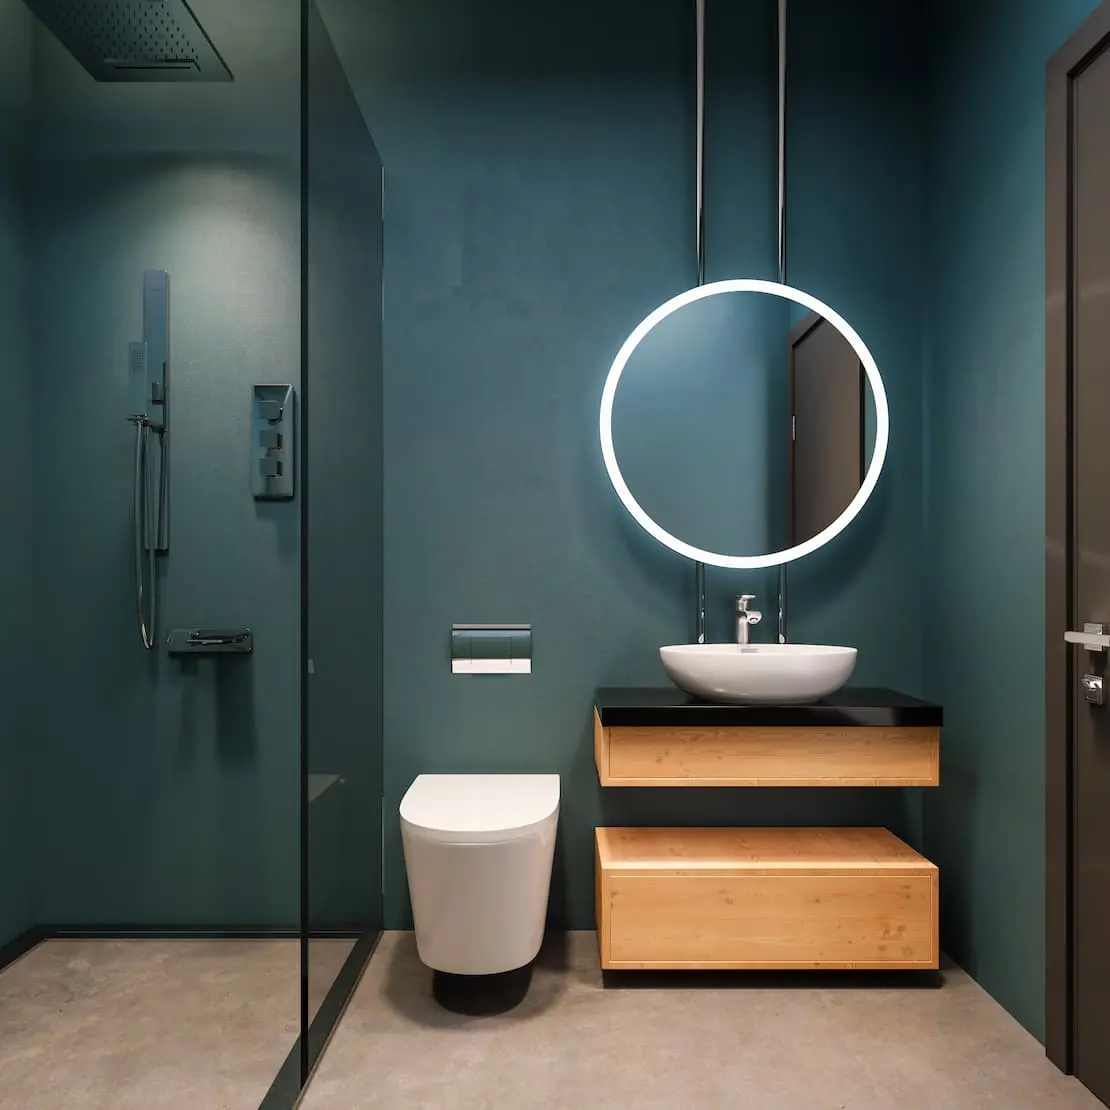 Phòng tắm với gương tròn chiếu sáng và tường có màu của vữa nhỏ Navy Blue